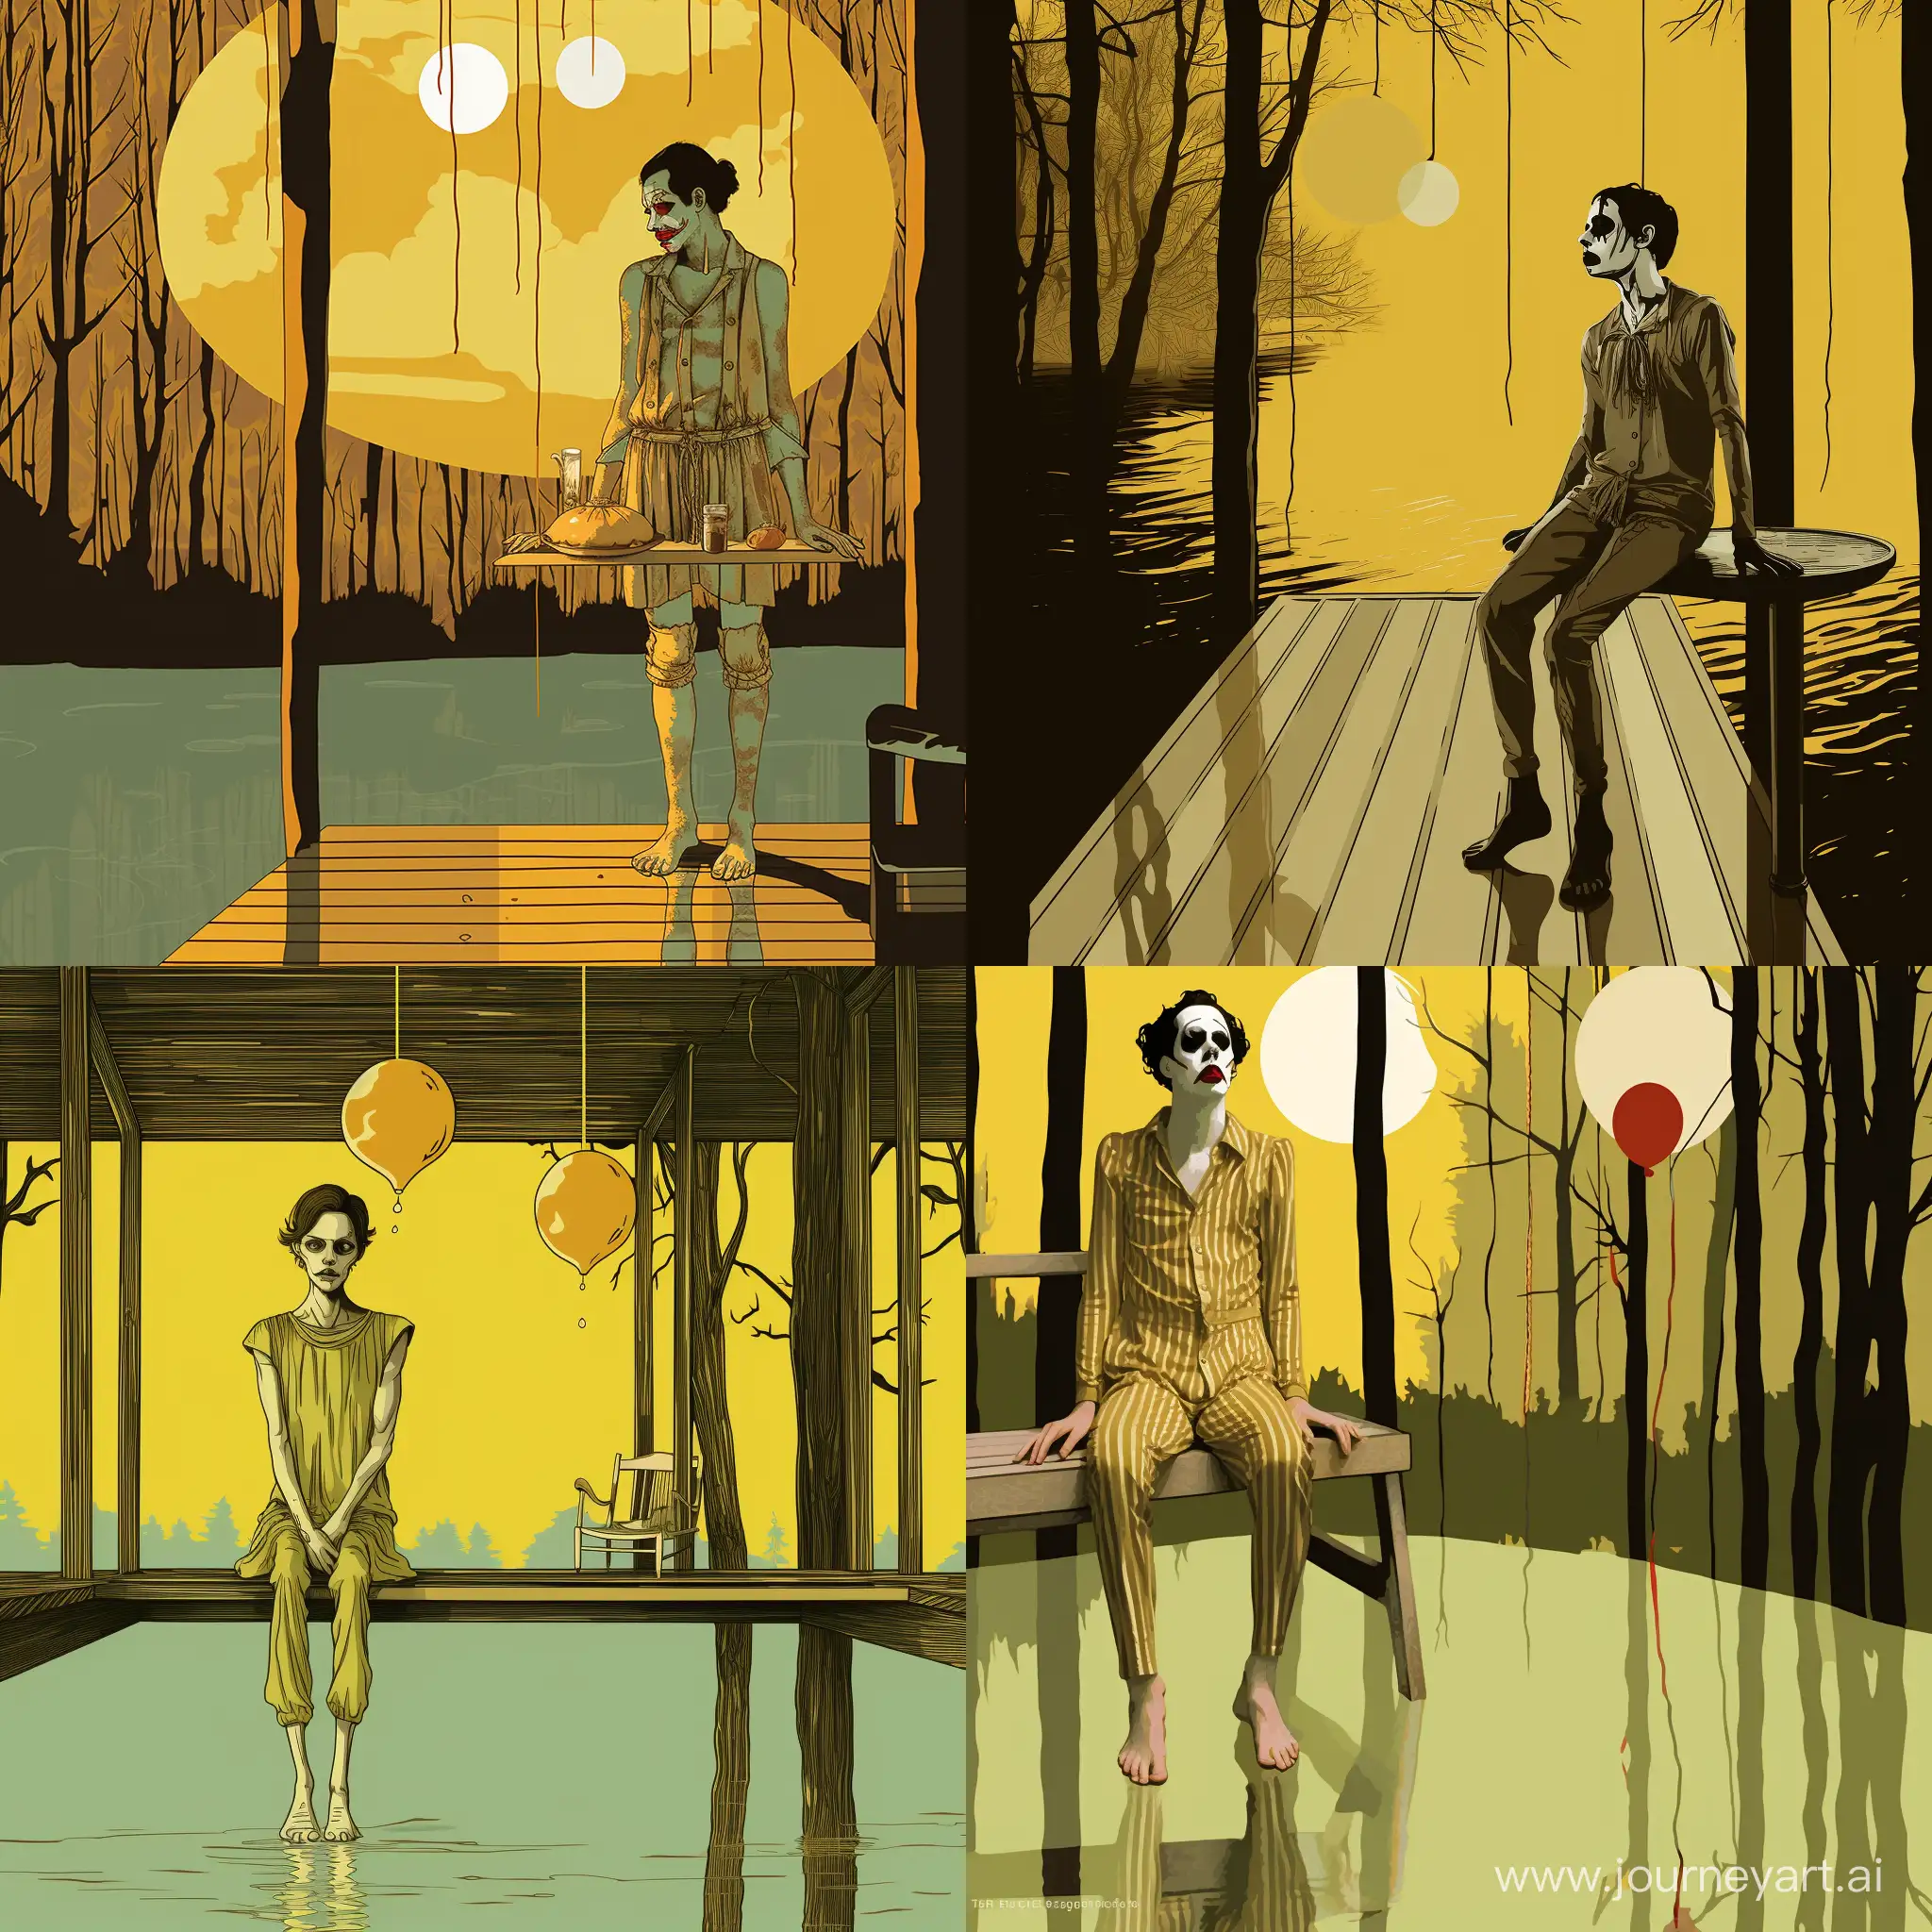 Melancholic-Stilt-Walker-Melting-Pale-Yellow-Glass-in-the-Woods